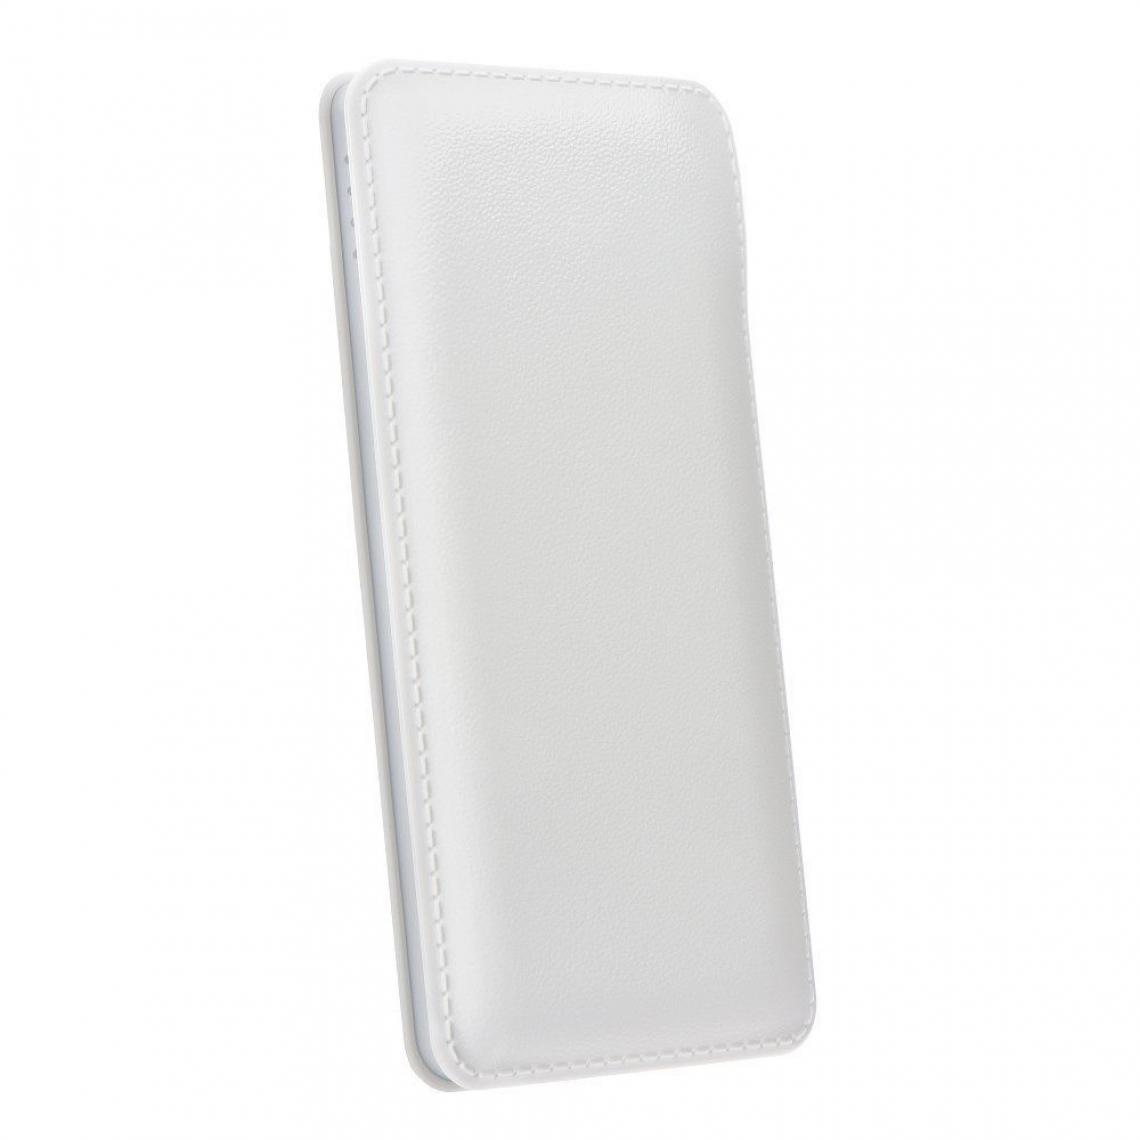 Ozzzo - Chargeur batterie externe 20000 mAh powerbank ozzzo blanc pour Huawei MediaPad T3 7.0" - Autres accessoires smartphone